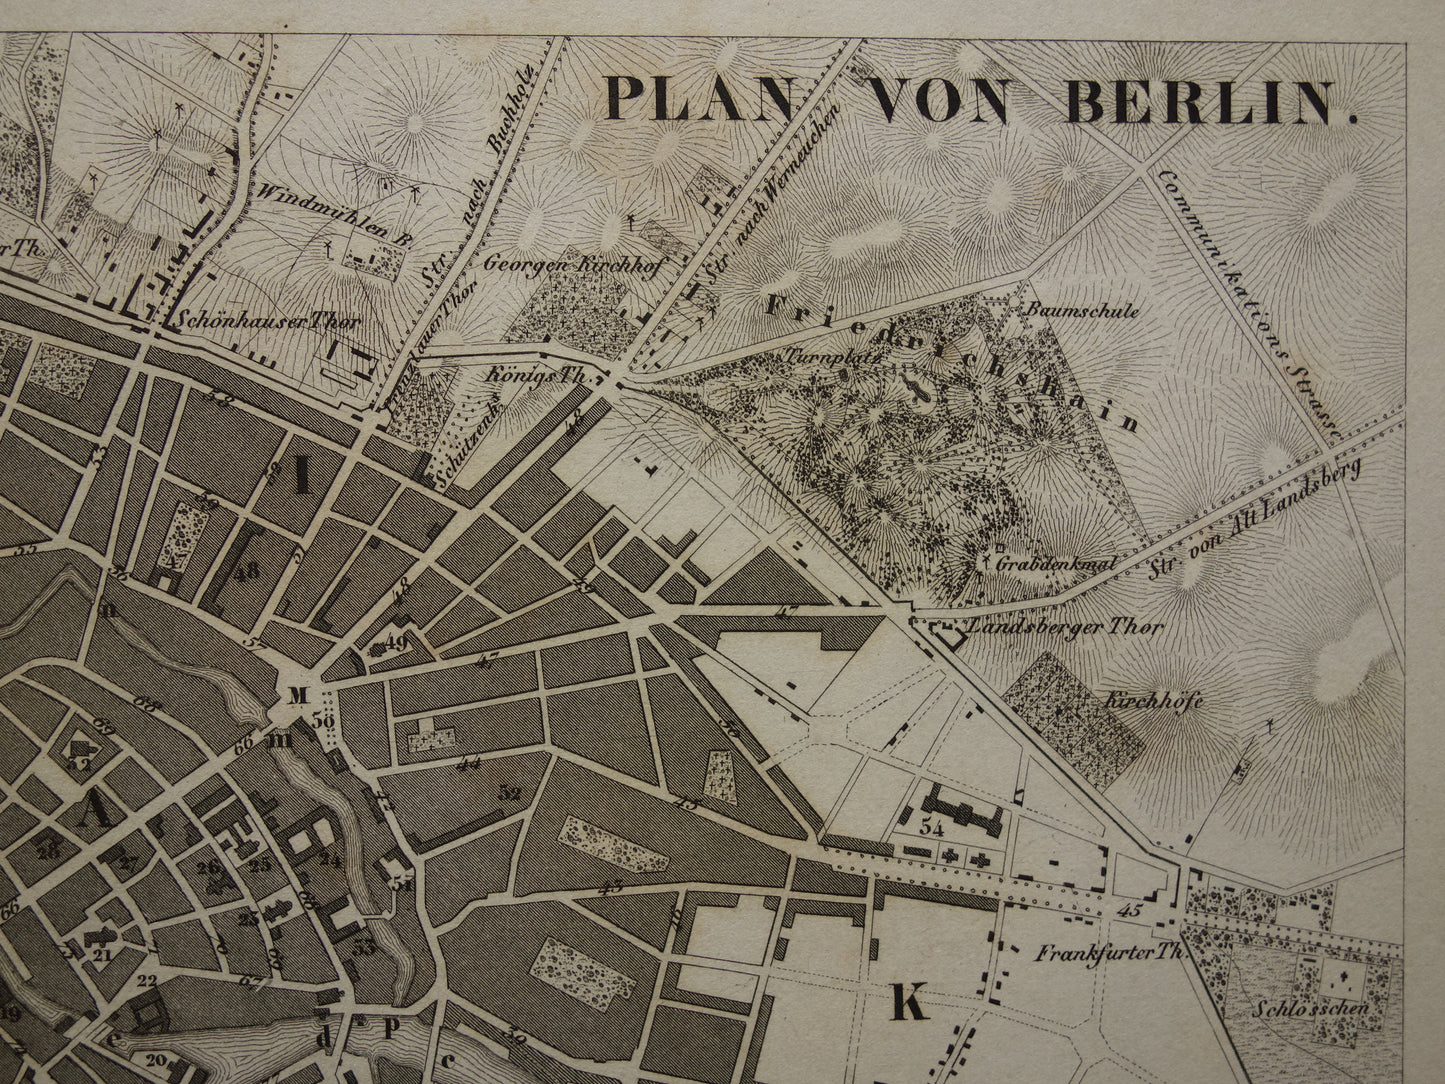 Oude kaart van Berlijn antieke plattegrond 170+ jaar oude gedetailleerde Duits prent uit 1849 originele vintage historische kaarten